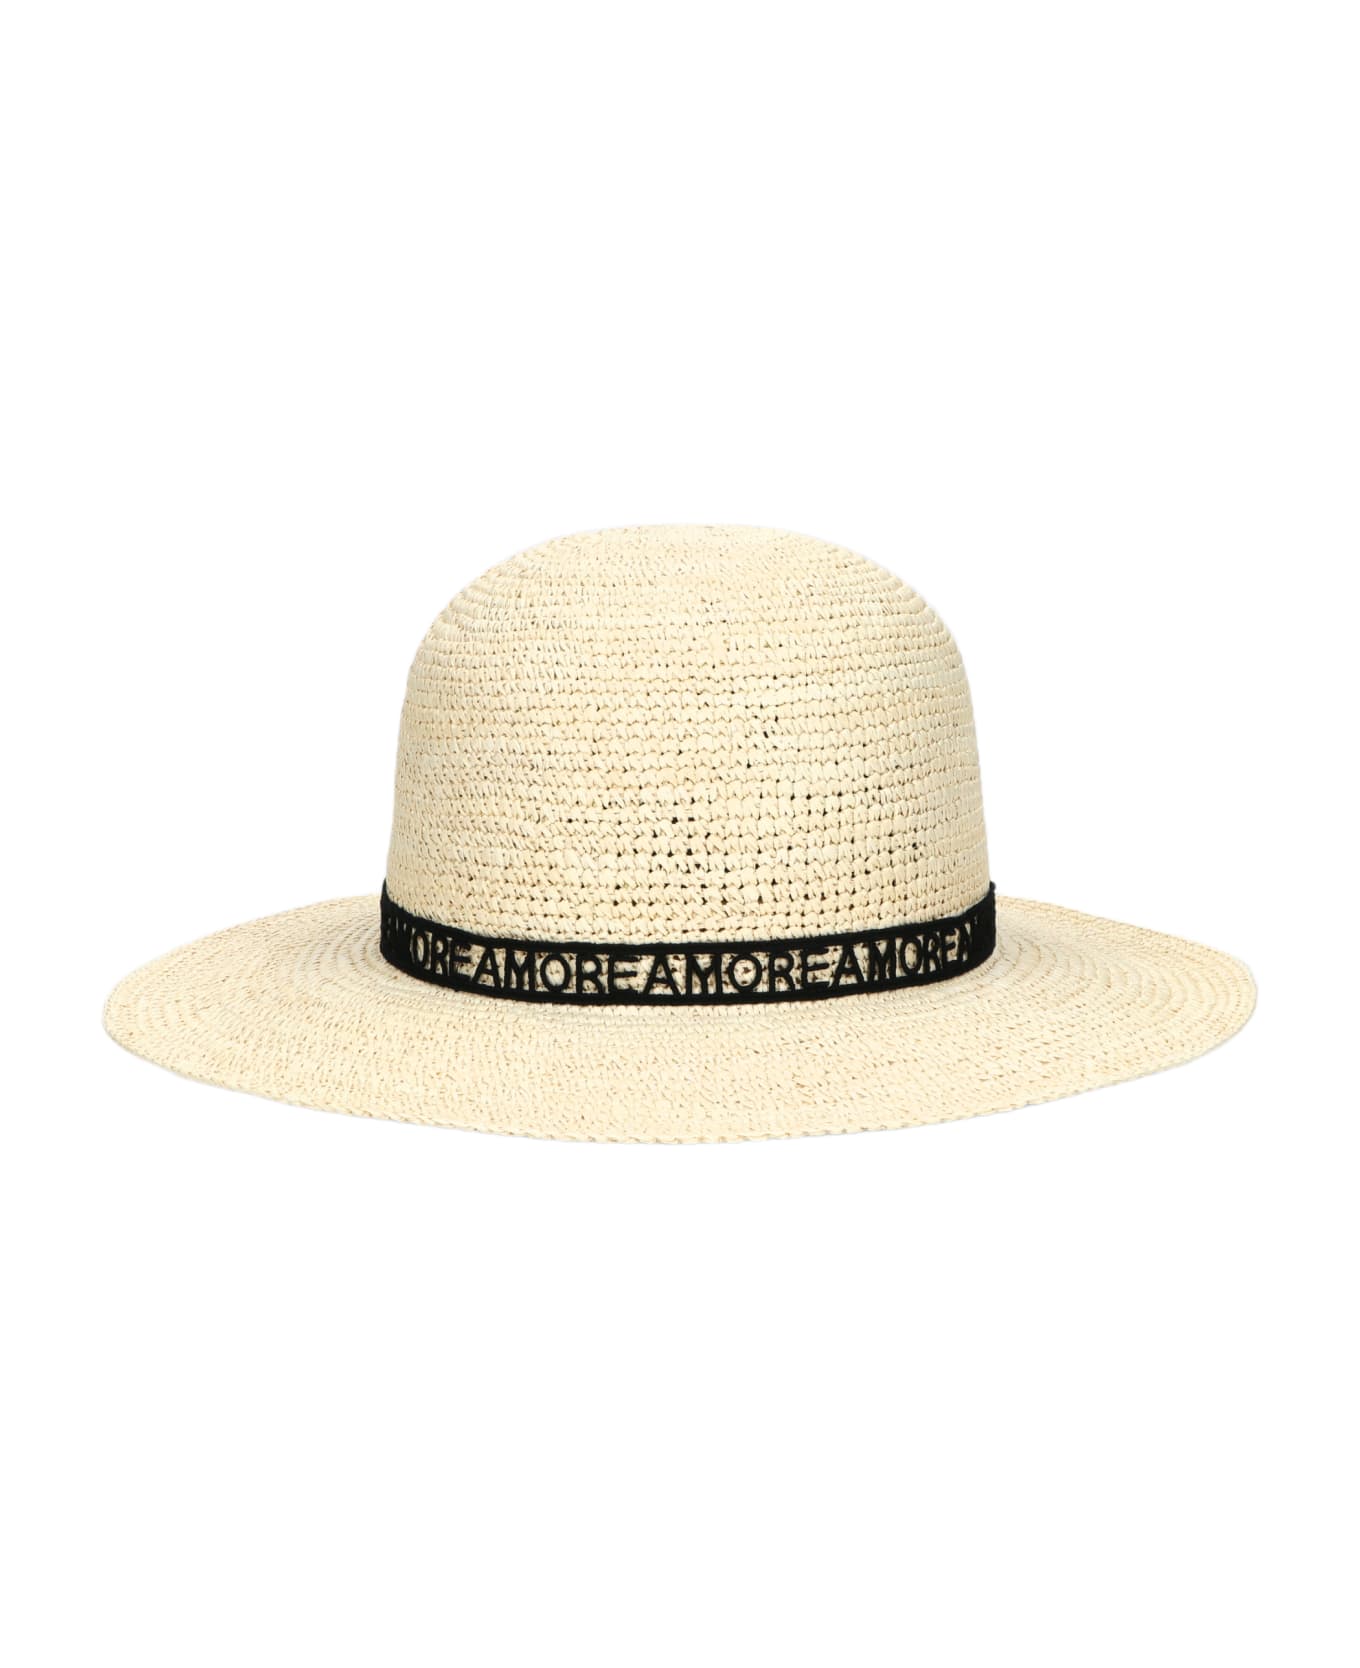 Borsalino Violet Panama Crochet - NATURAL, PATTERNED BLACK HAT BAND 帽子